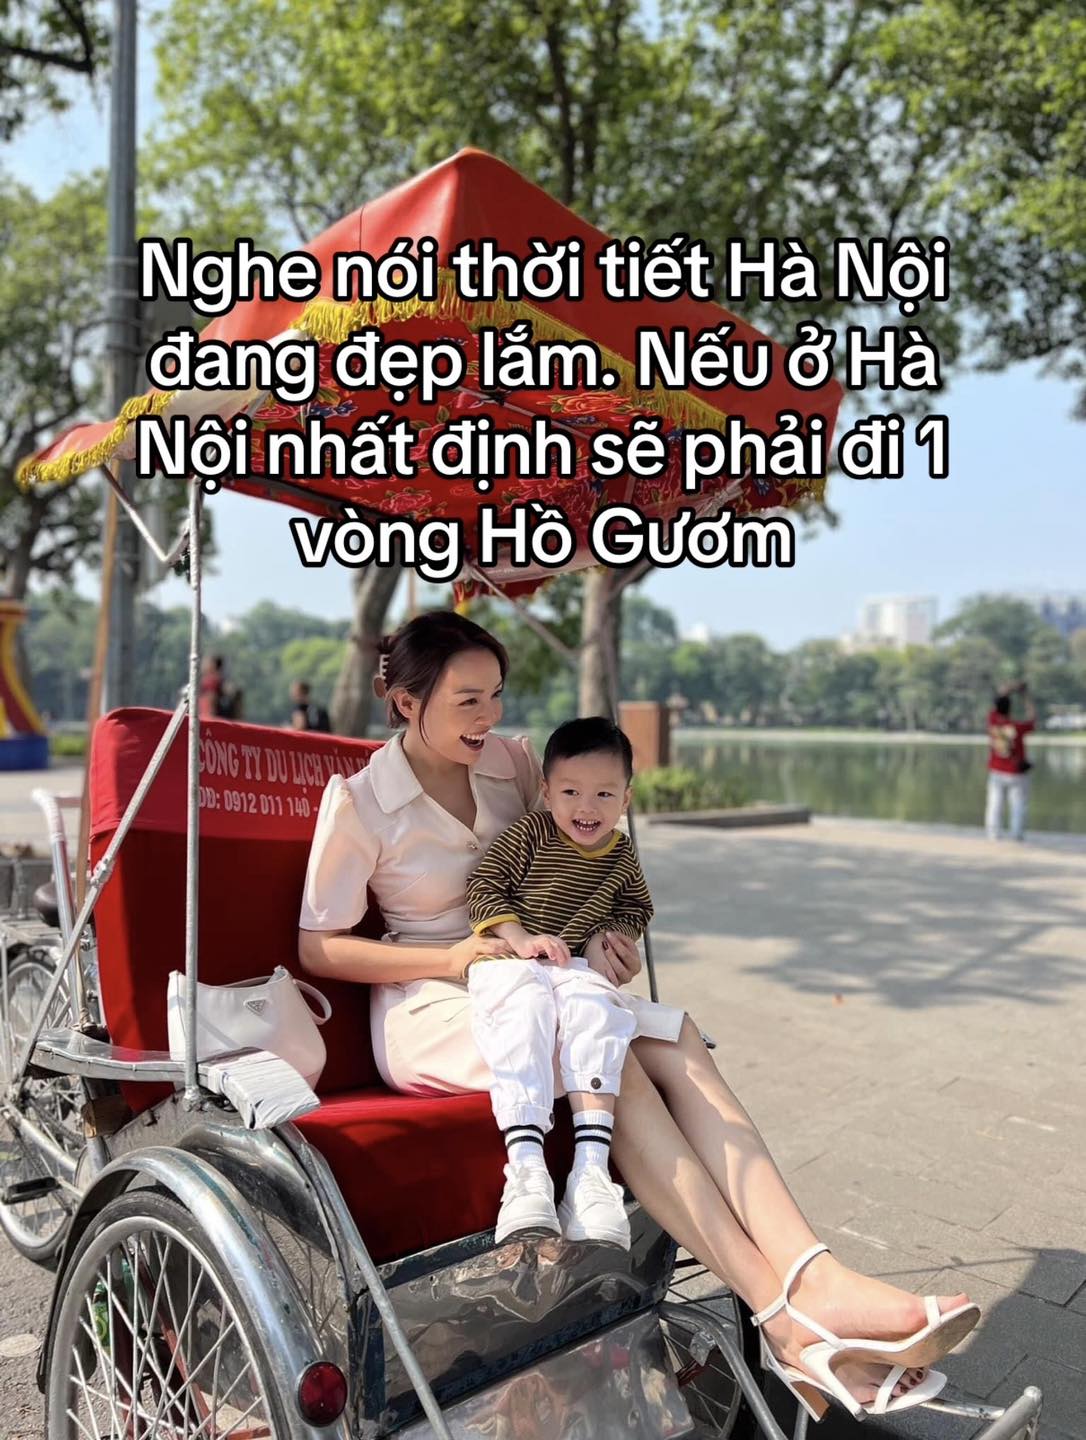 Nghỉ Tết dương đi đâu, chơi gì ở Hà Nội và TP HCM &quot;phiên bản nhà có con nhỏ&quot;? - Ảnh 1.